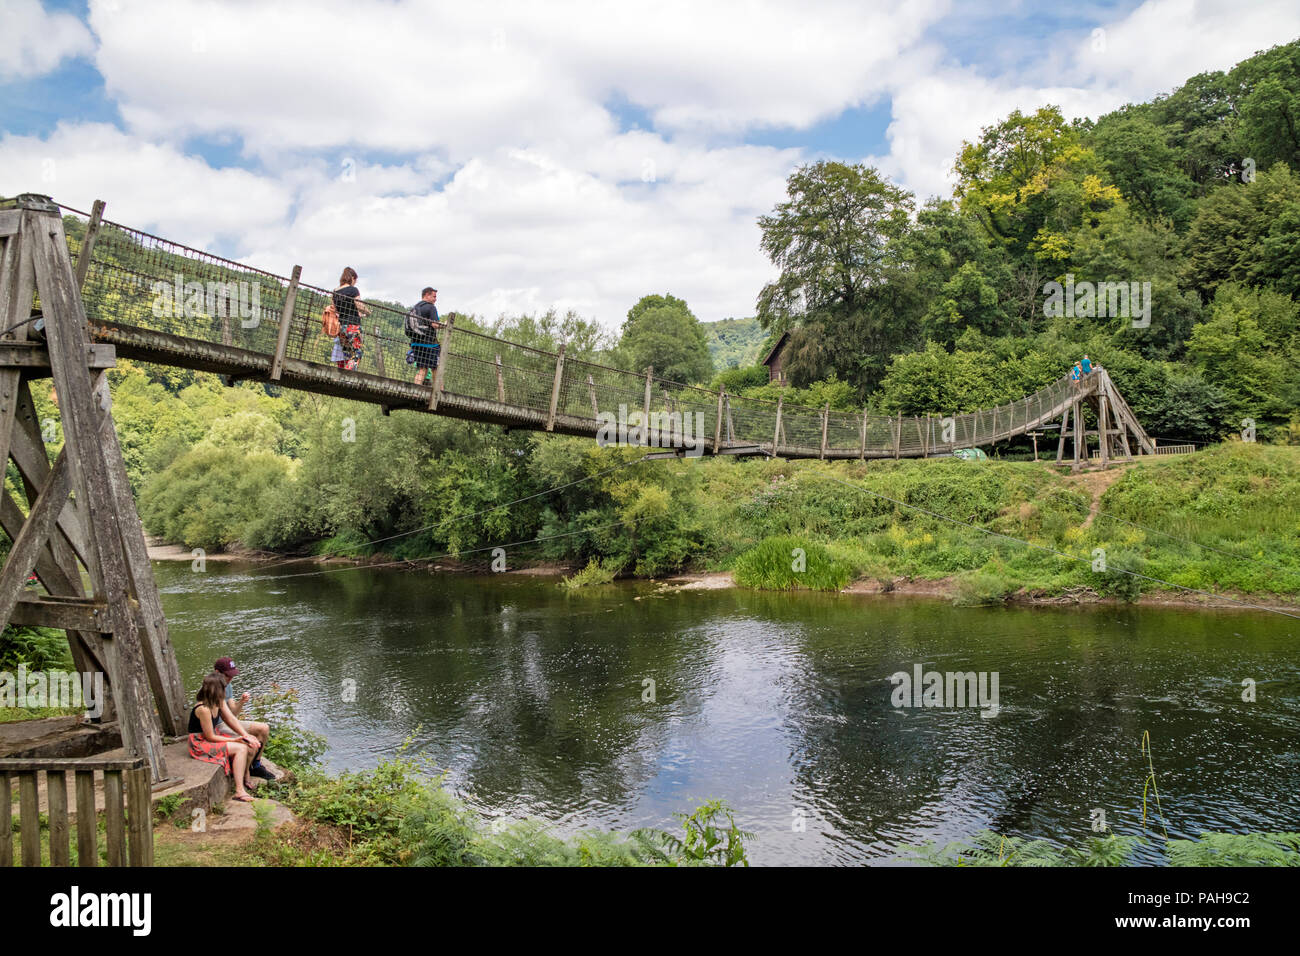 Biblins ponte di sospensione cercando di fronte a Symonds Yat ad est oltre il fiume Wye, Wye Valley, Herefordshire, England, Regno Unito Foto Stock